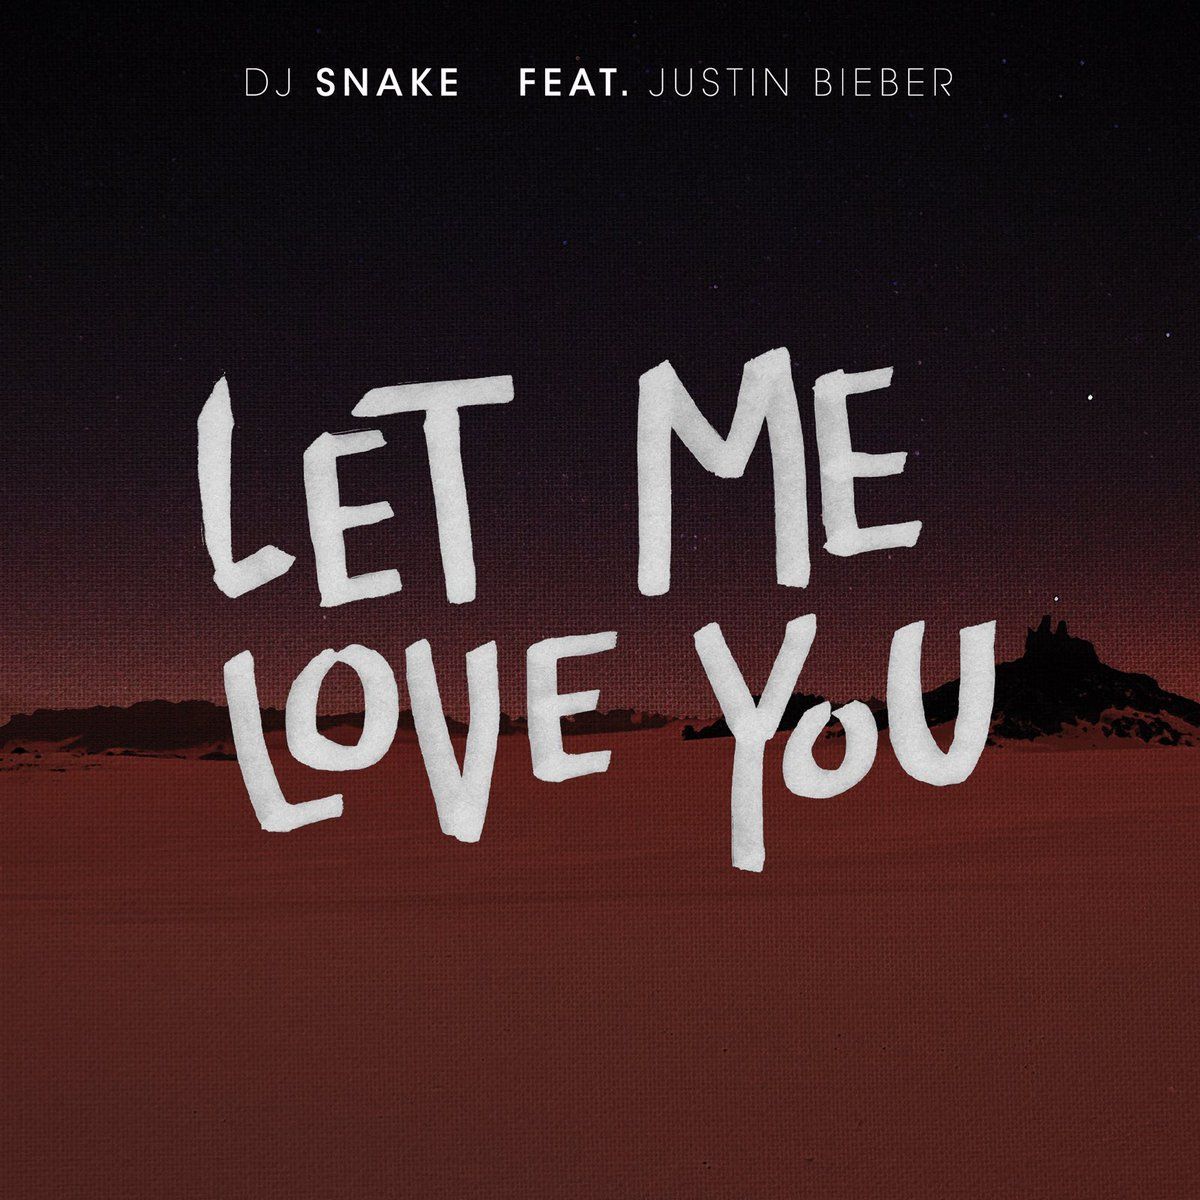 DJ Snake- Let Me Love You ft. Justin Bieber. Justin bieber albums, Justin bieber lyrics, Love yourself lyrics